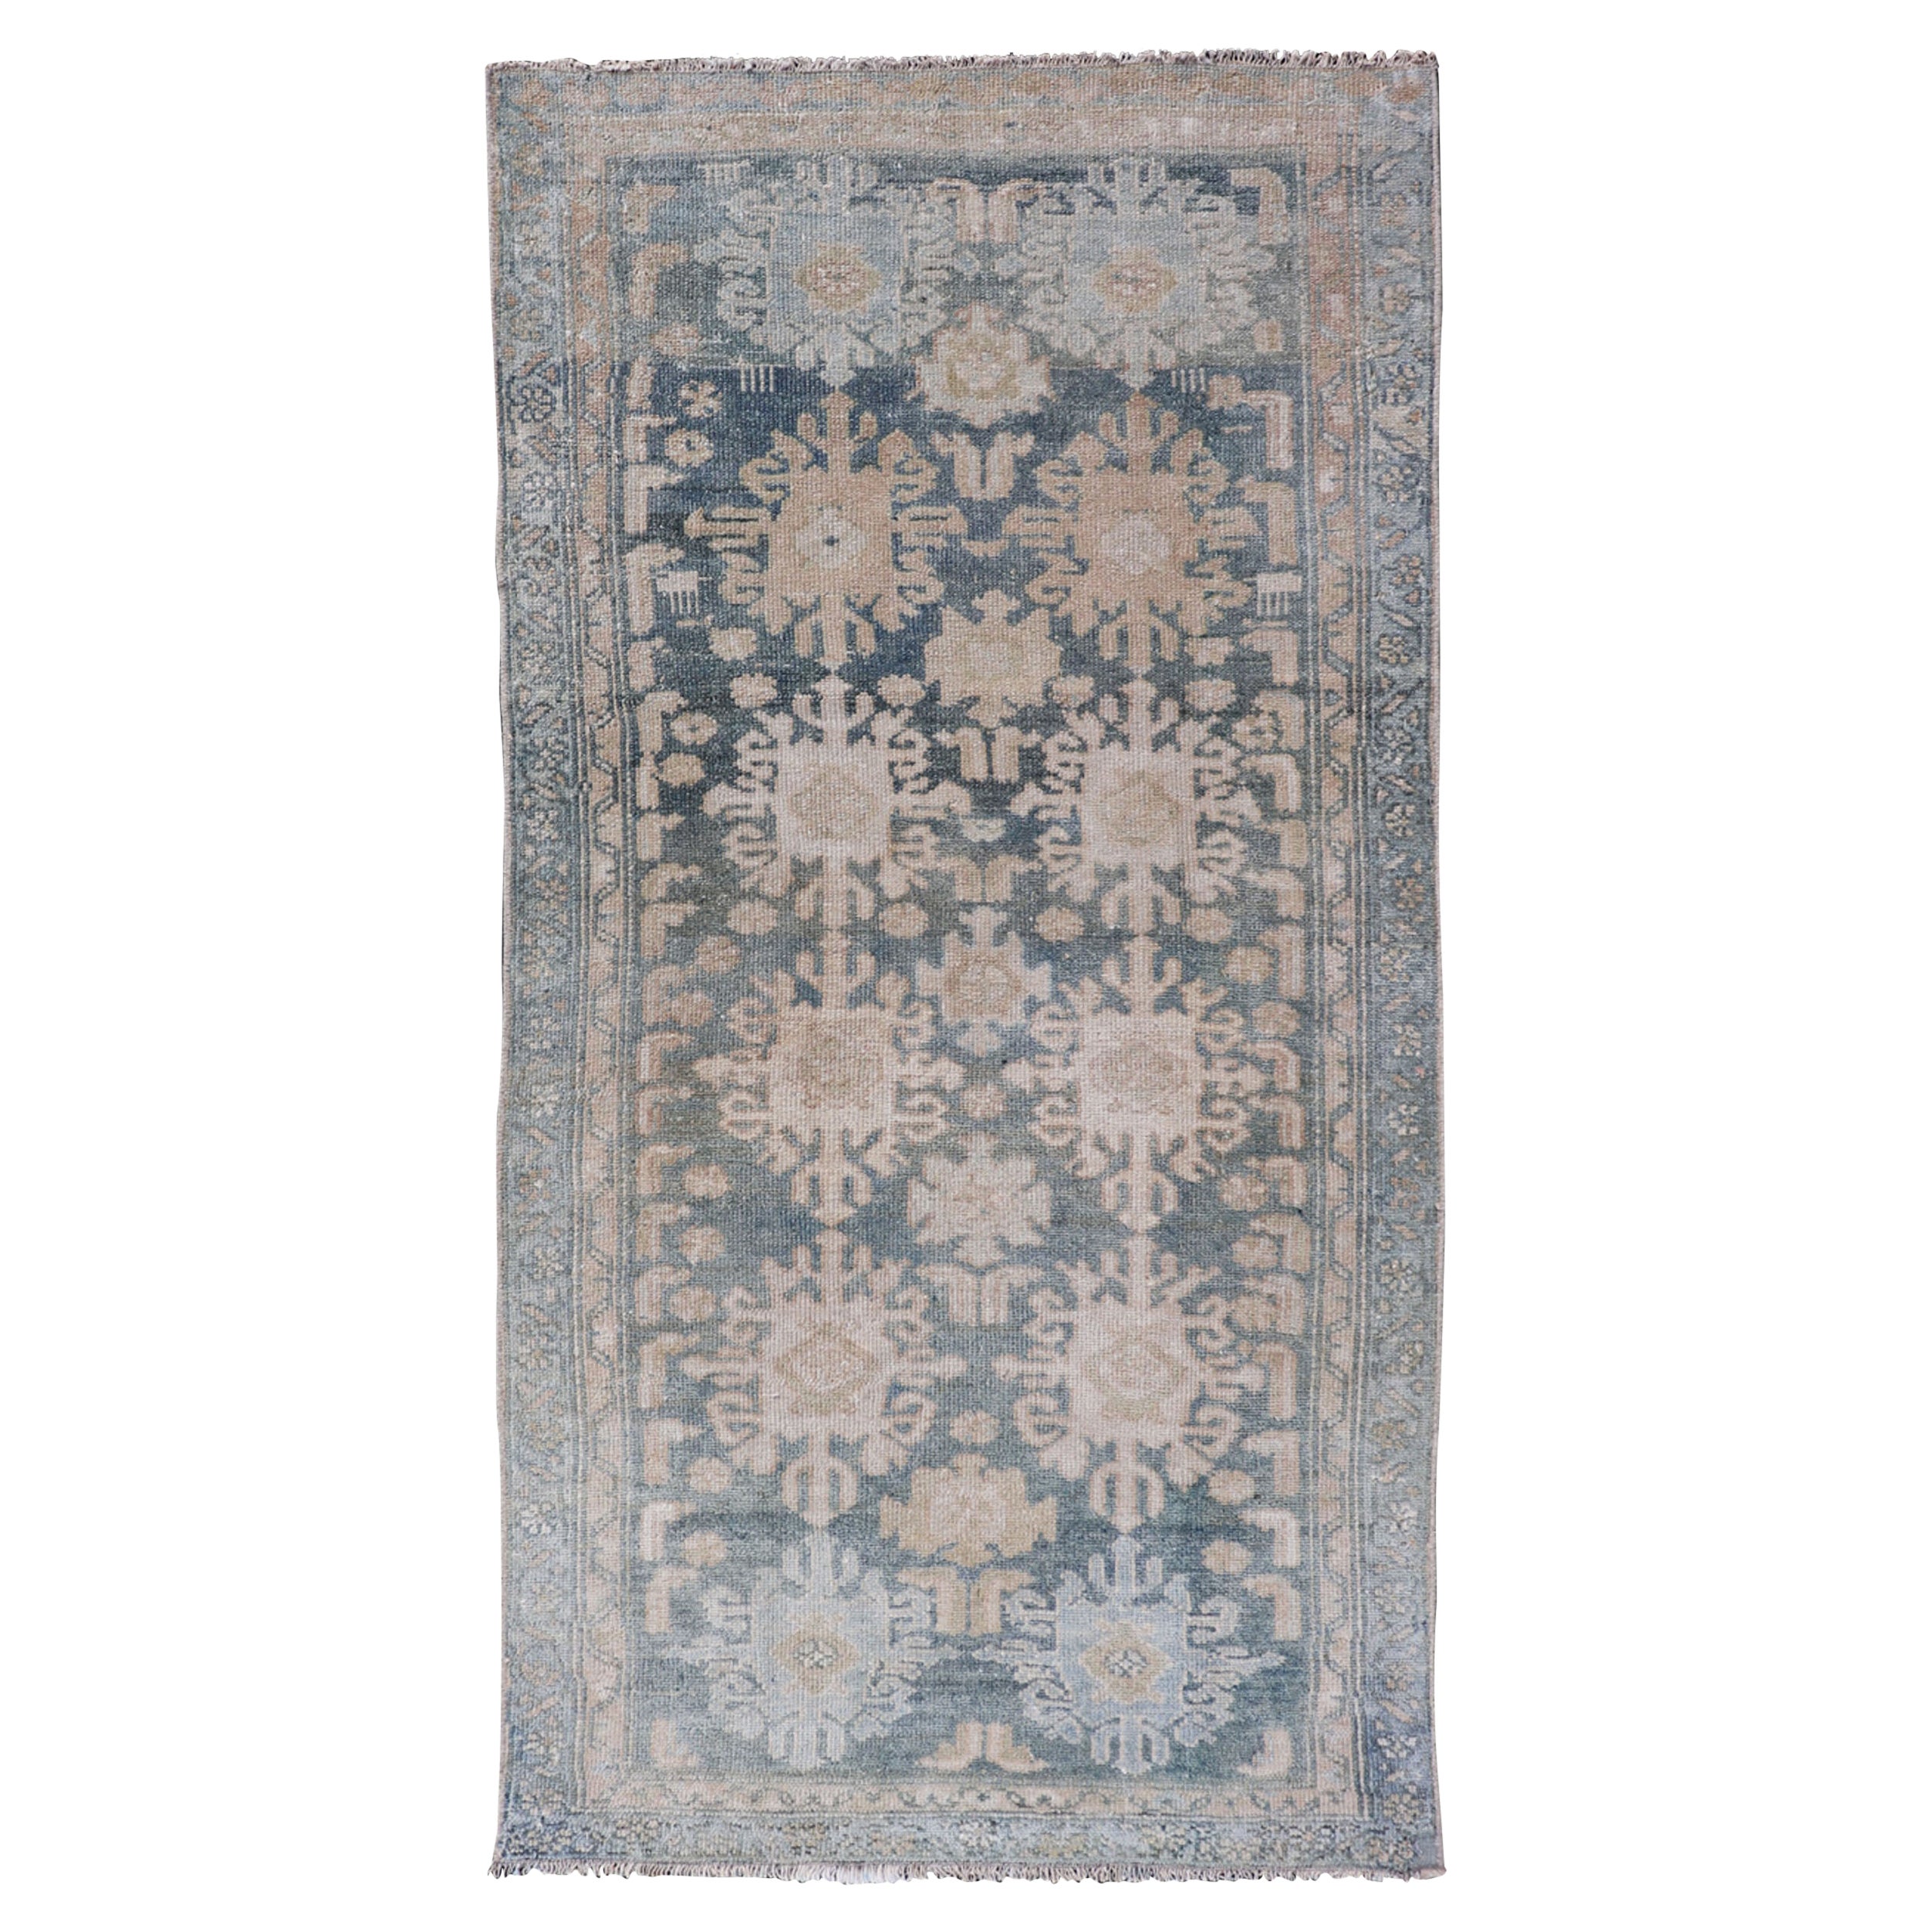 Antiker persischer Malayer-Teppich mit subgeometrischem Design in zartem Blau und Creme